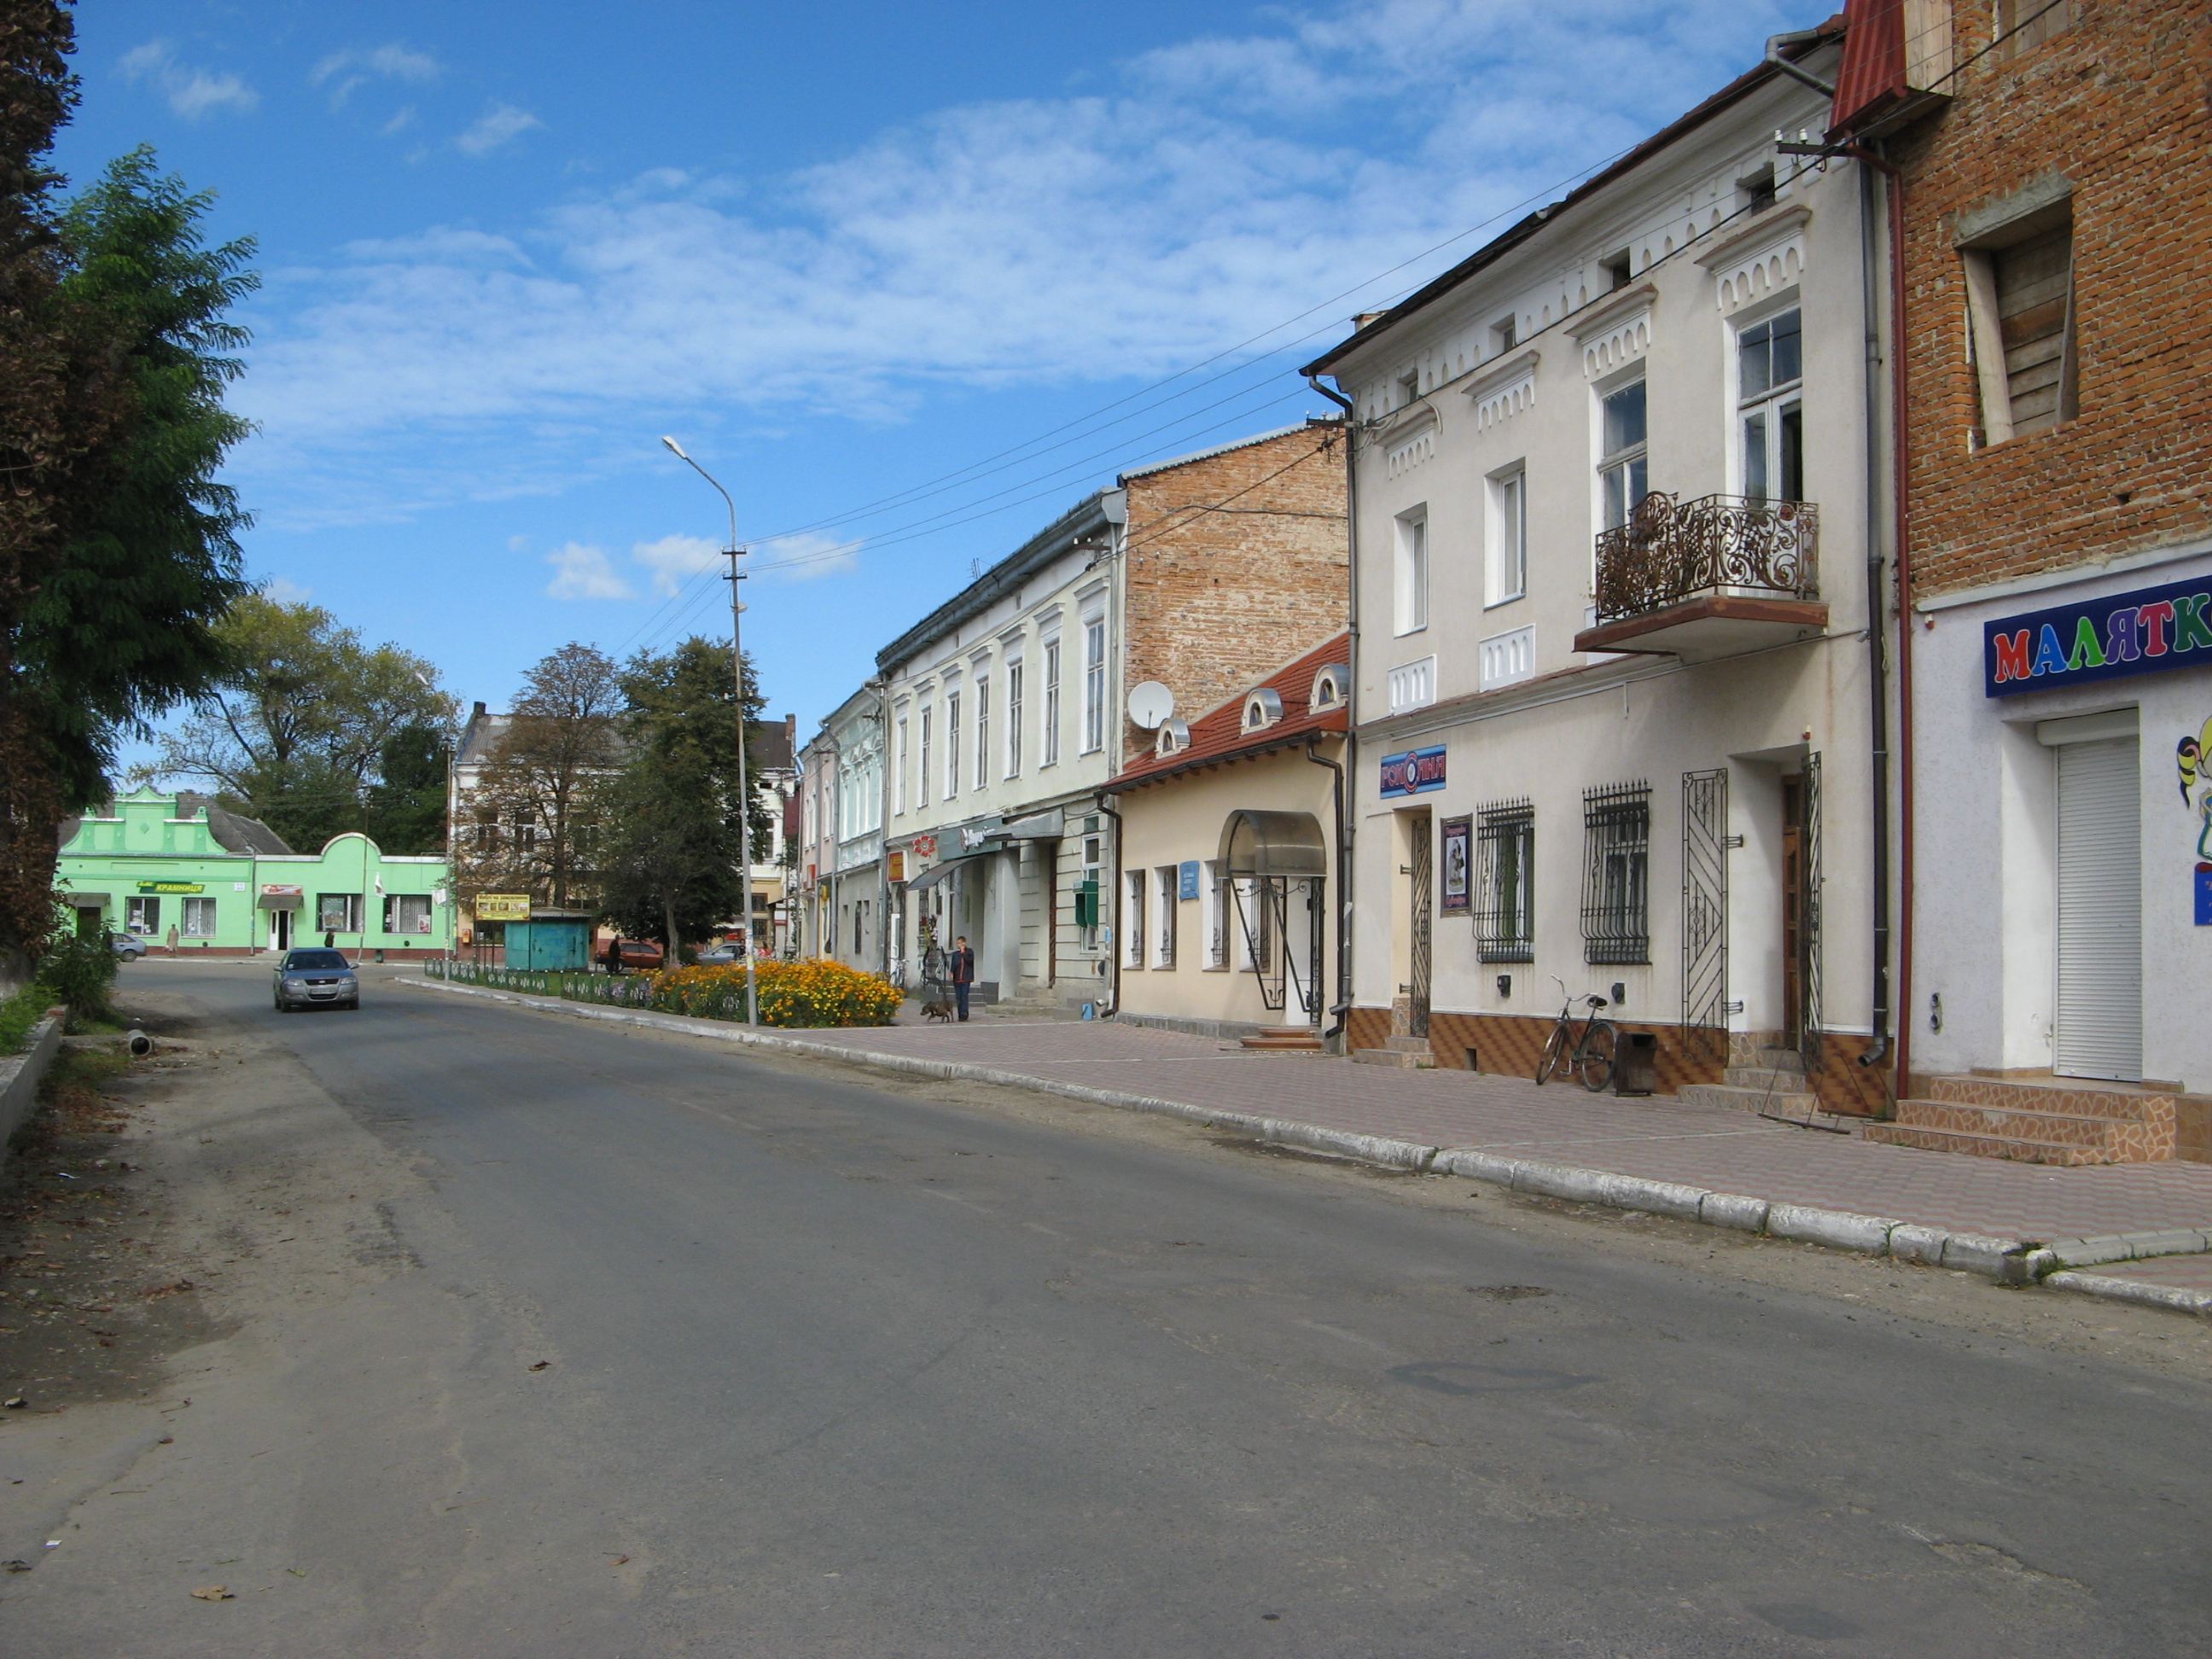 Dobromil street now